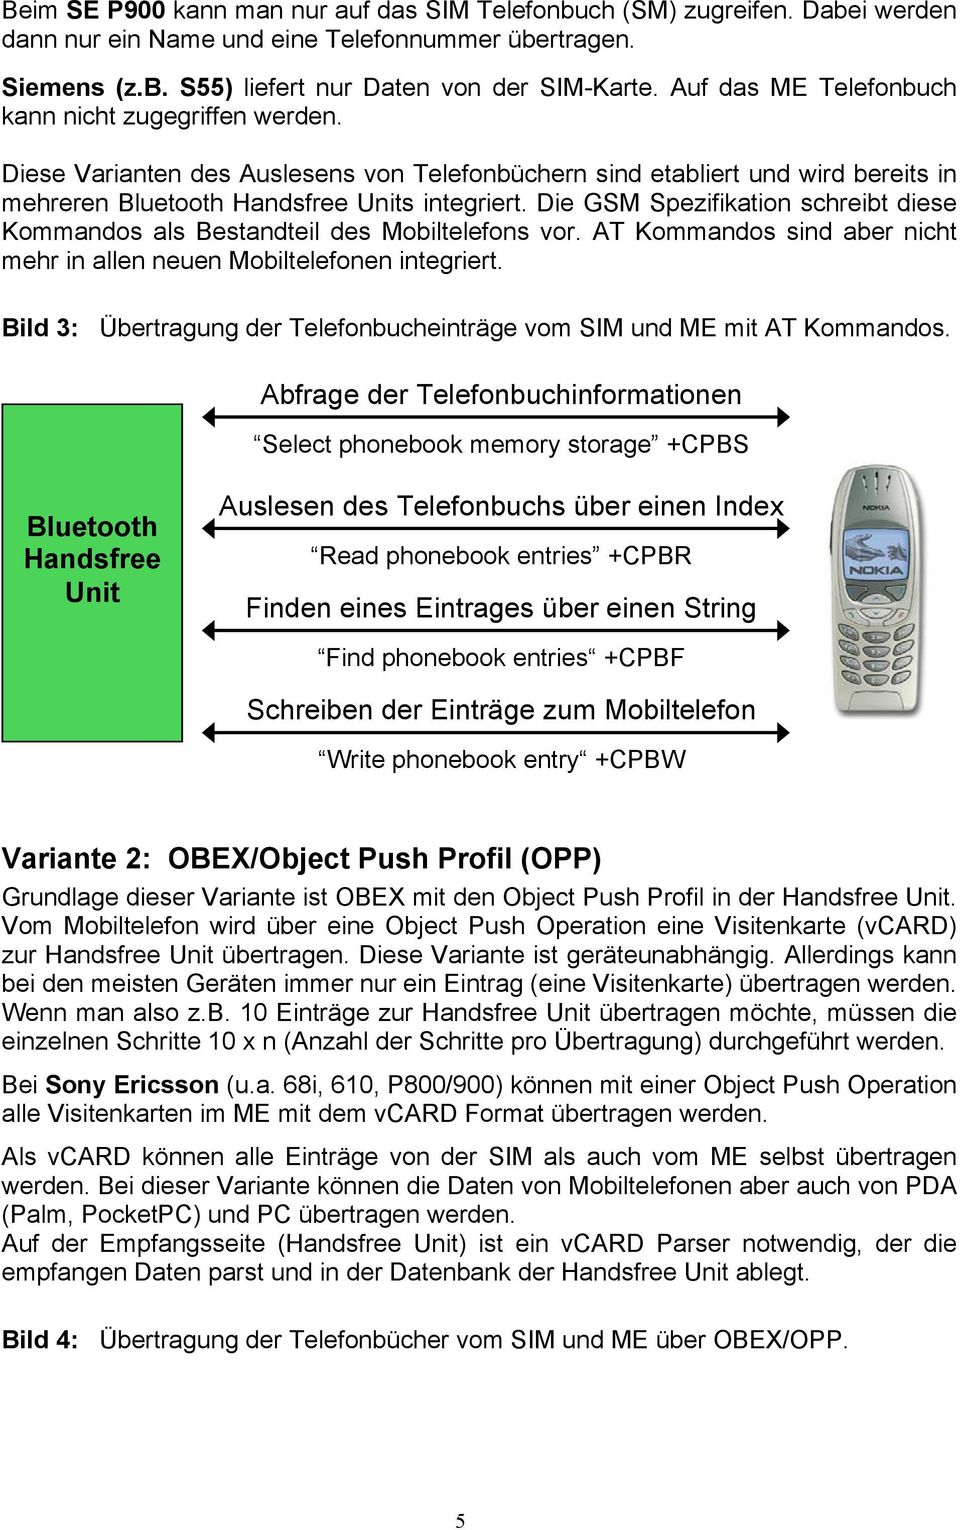 Die GSM Spezifikation schreibt diese Kommandos als Bestandteil des Mobiltelefons vor. AT Kommandos sind aber nicht mehr in allen neuen Mobiltelefonen integriert.